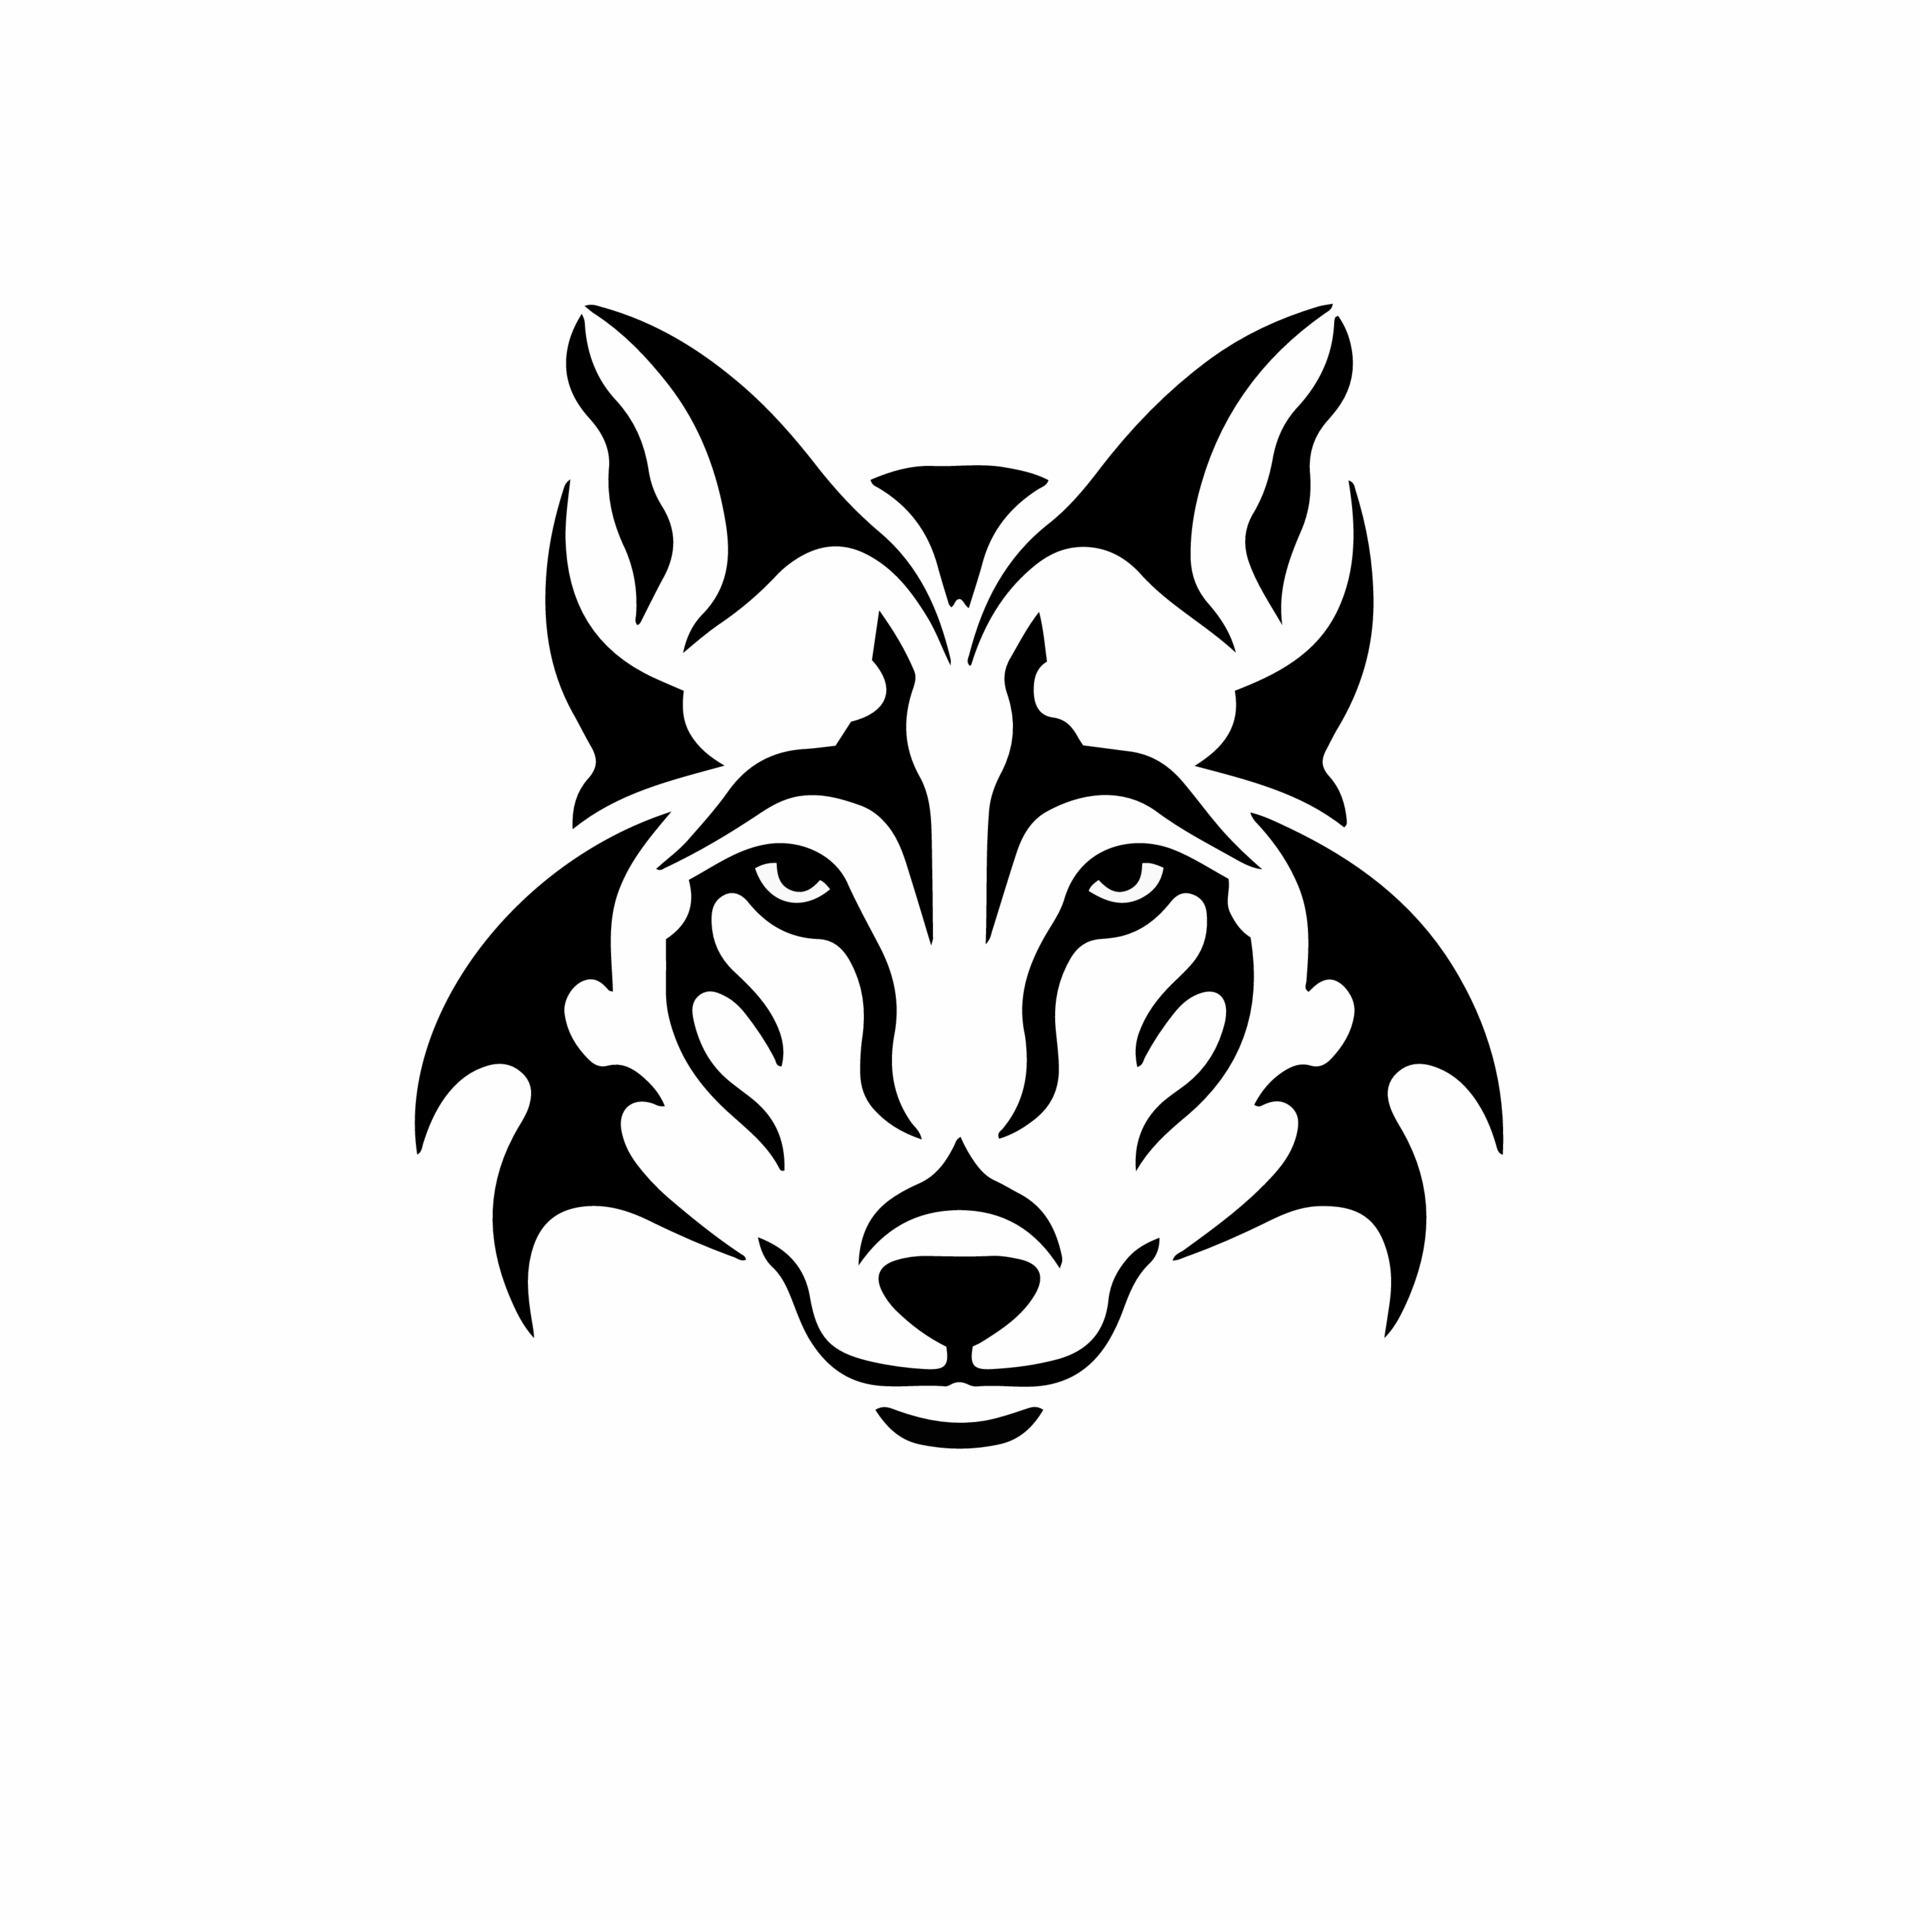 Tribal Wolf Head Logo. Tattoo Design. Animal Stencil Vector Illustration 19015760 Vector Art at Vecteezy